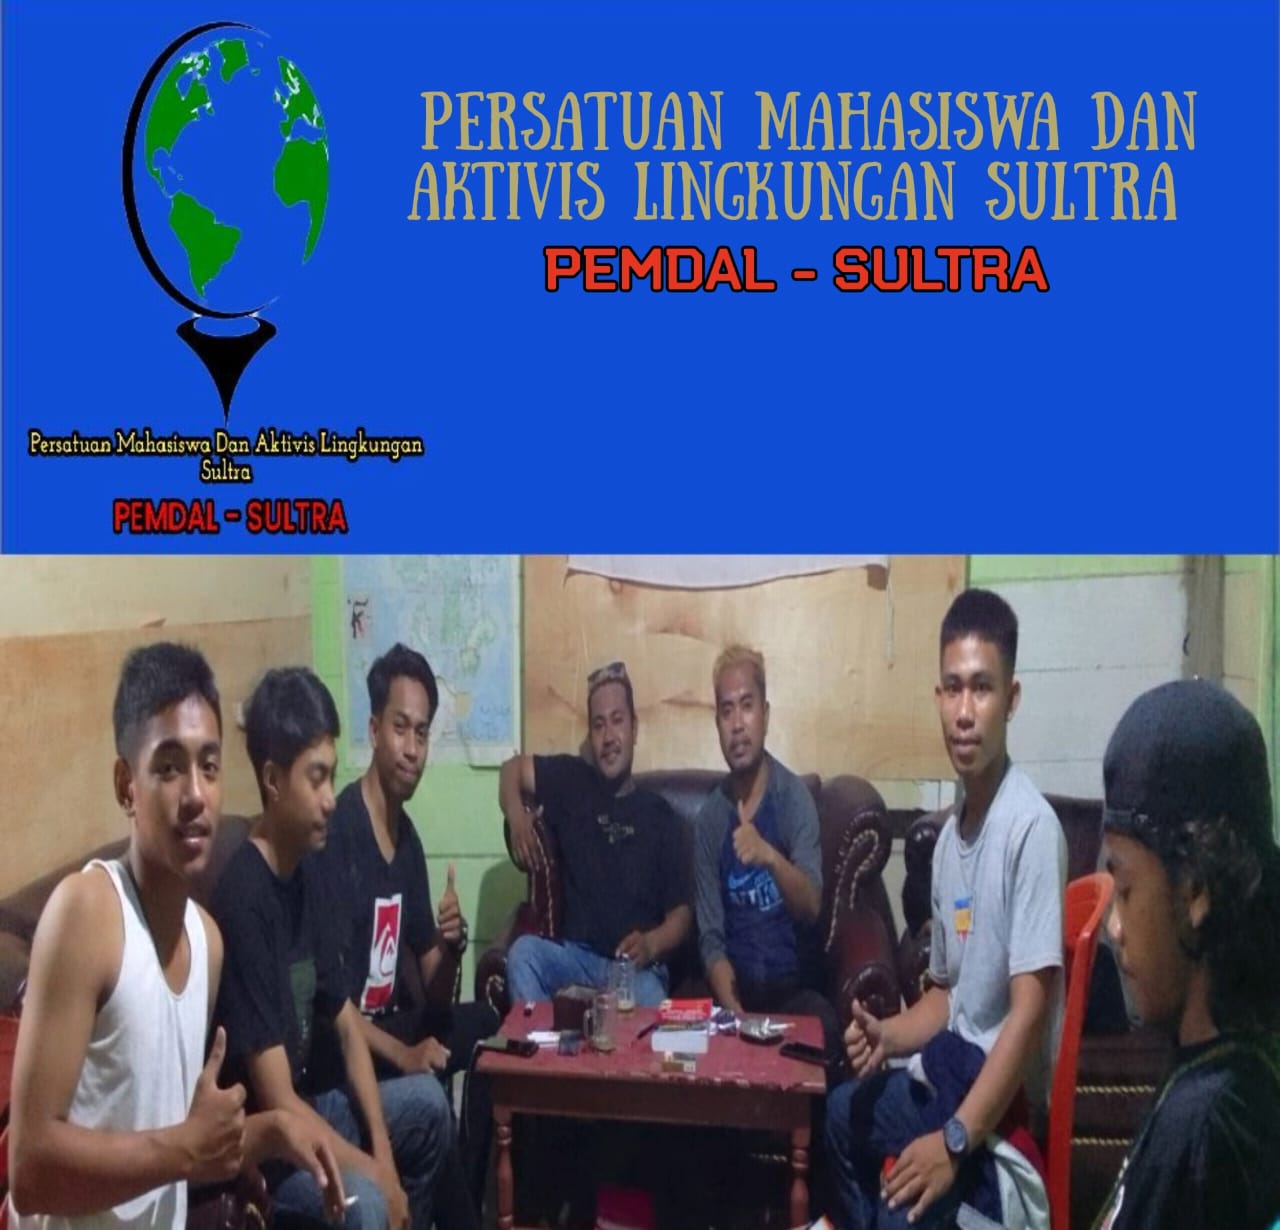 Pemdal Sulawesi Tenggara : Ikut Angkat Suara Terkait Unsur Pengancaman Dari Aktivis, Berdasarkan Pernyataan Polres Wakatobi 